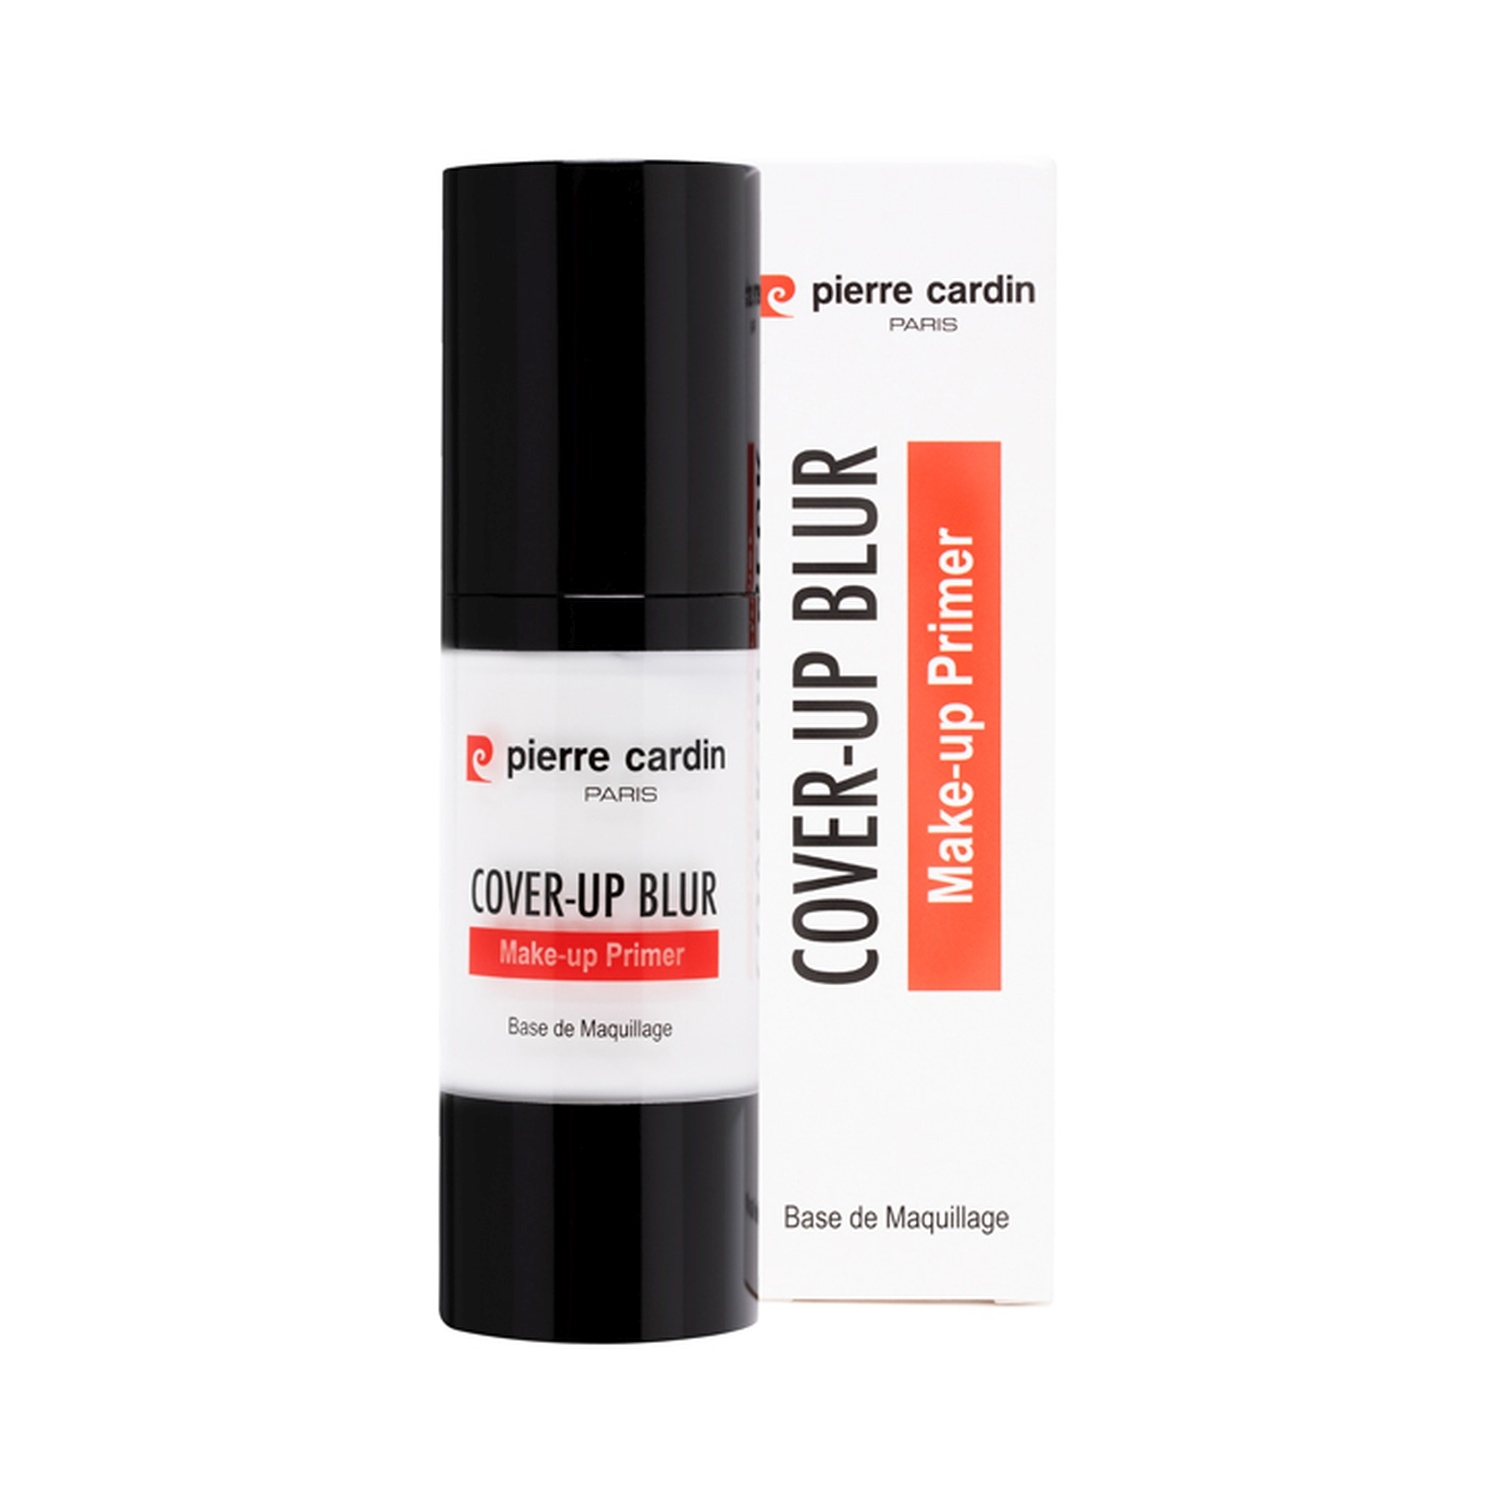 Pierre Cardin Paris | Pierre Cardin Paris Cover Up Blur Makeup Primer (30ml)